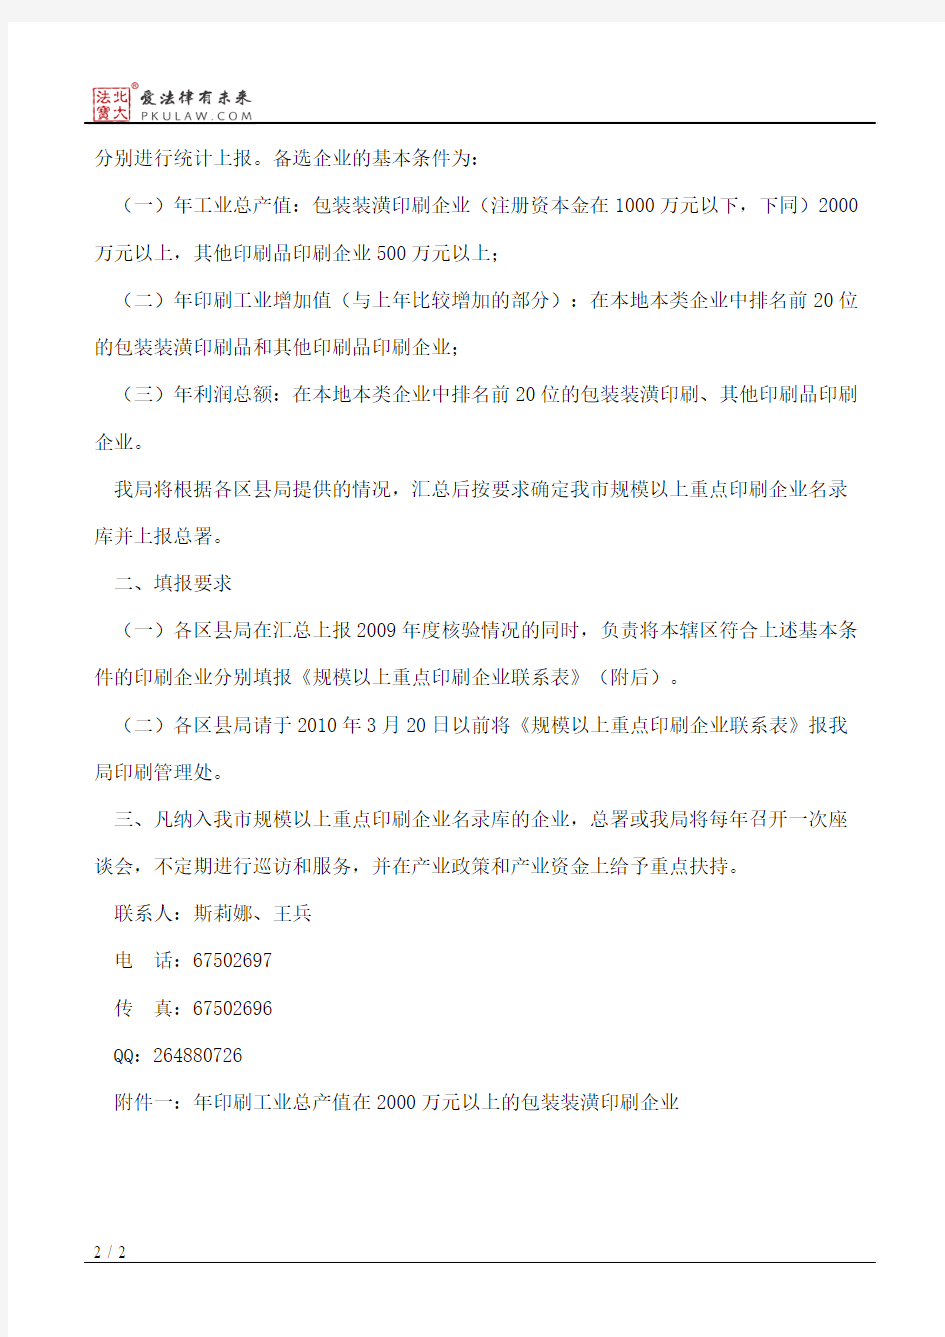 重庆市新闻出版局关于建立我市规模以上重点印刷企业联系制度的通知